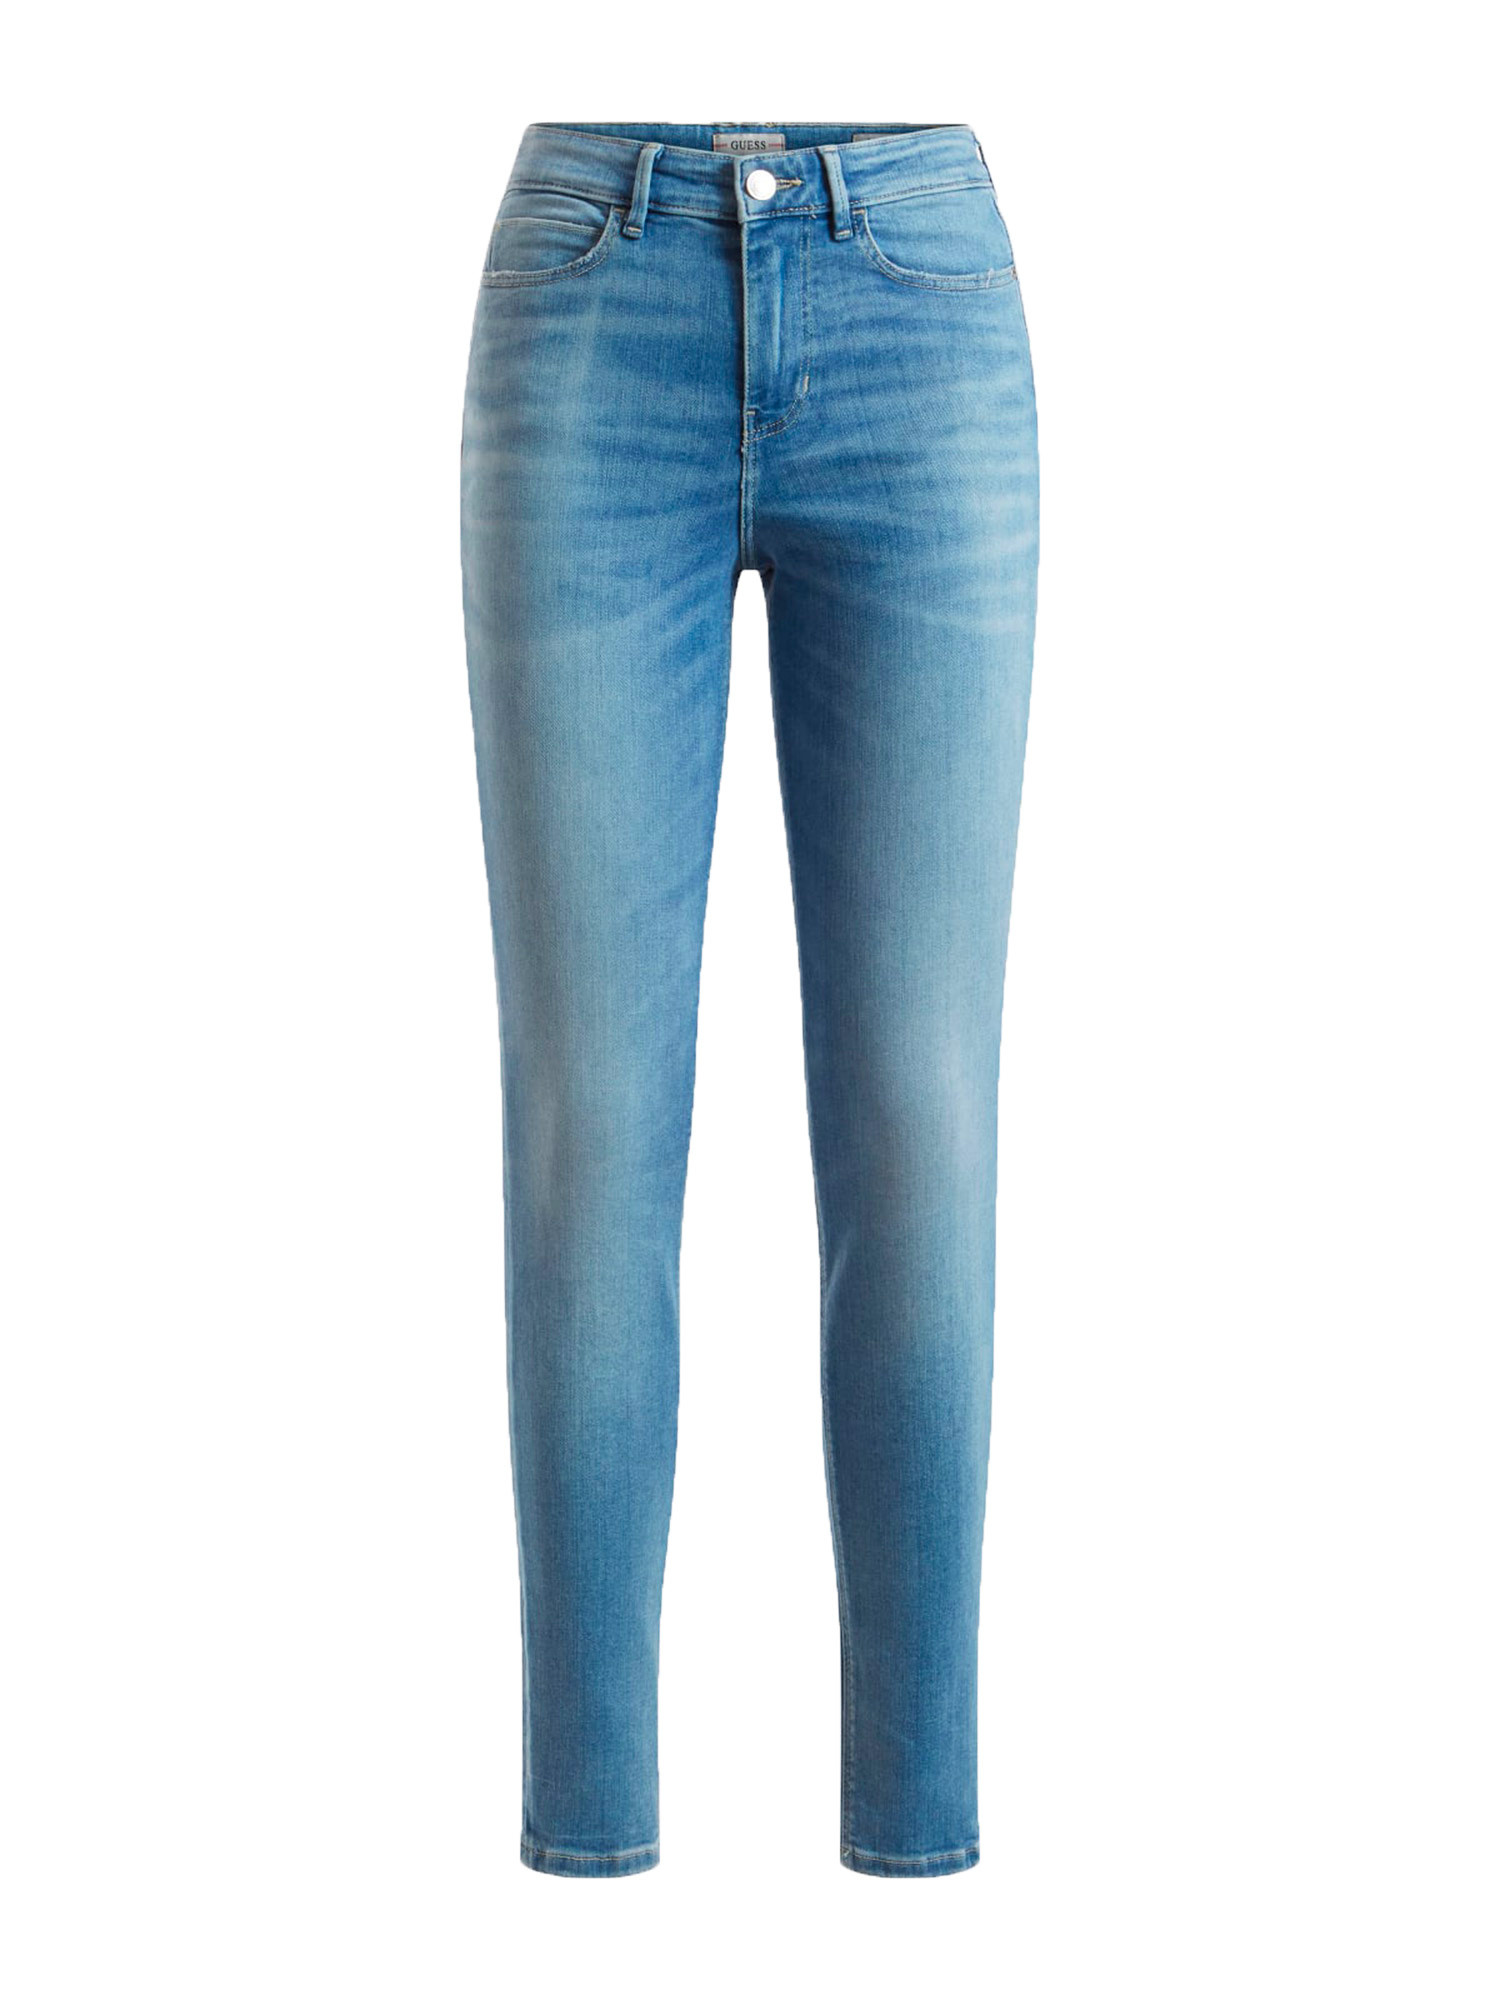 Guess - 5-pocket skinny jeans, Light Blue, large image number 0